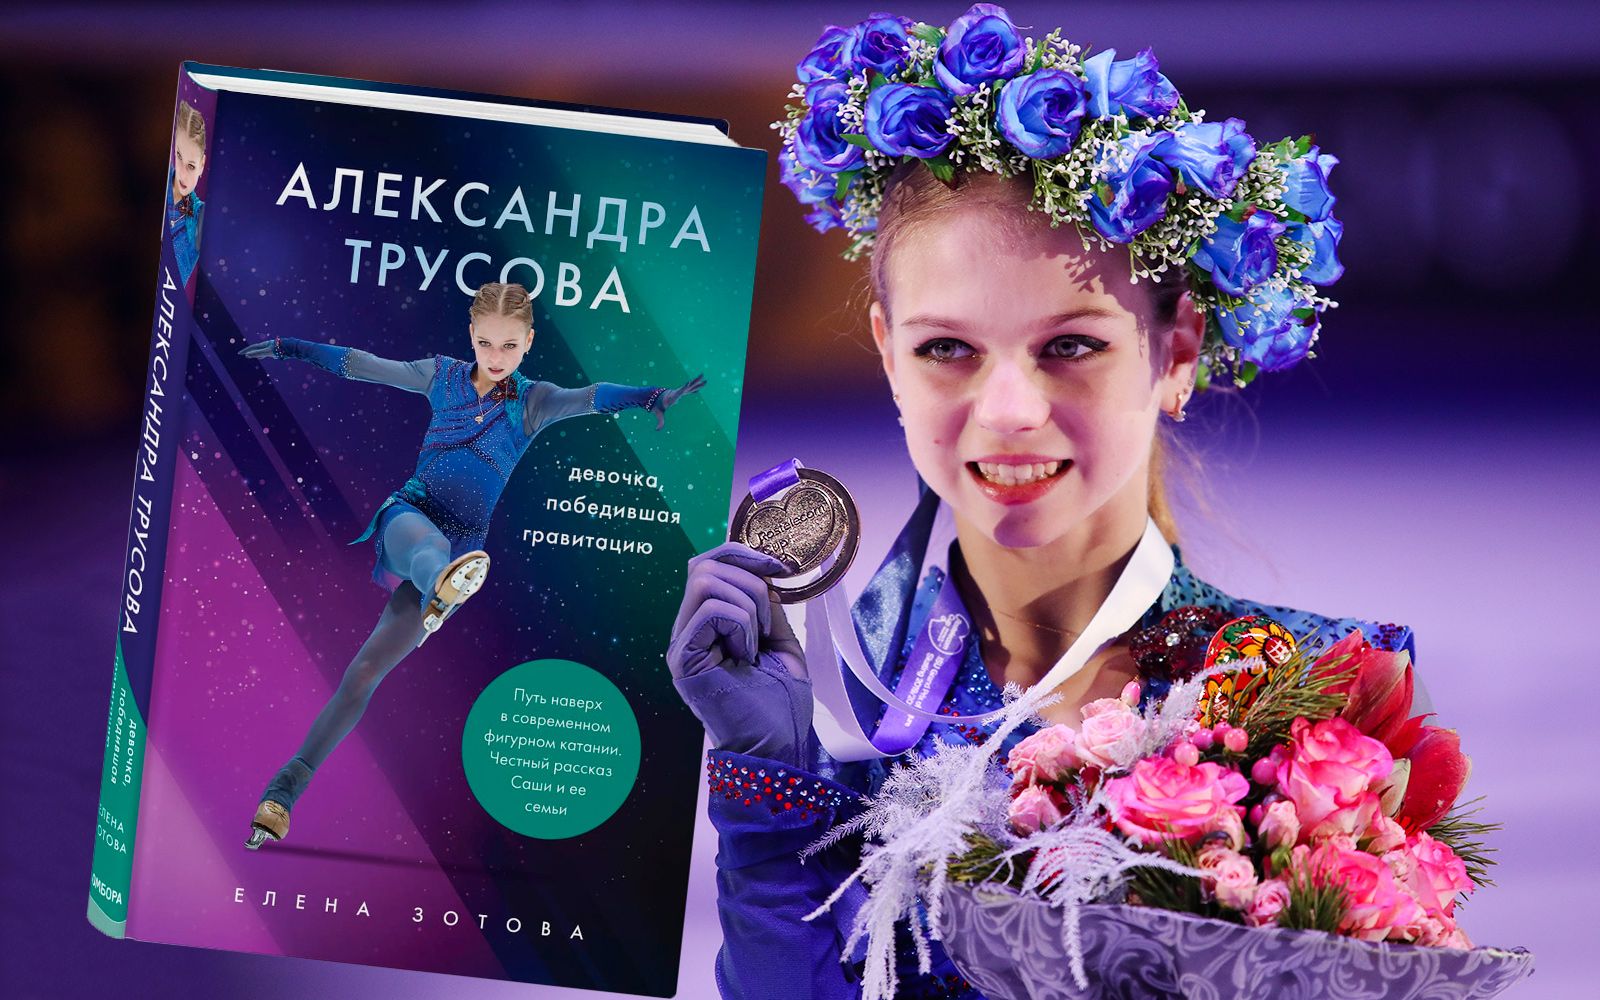 Стоит ли покупать книгу Александры Трусовой?